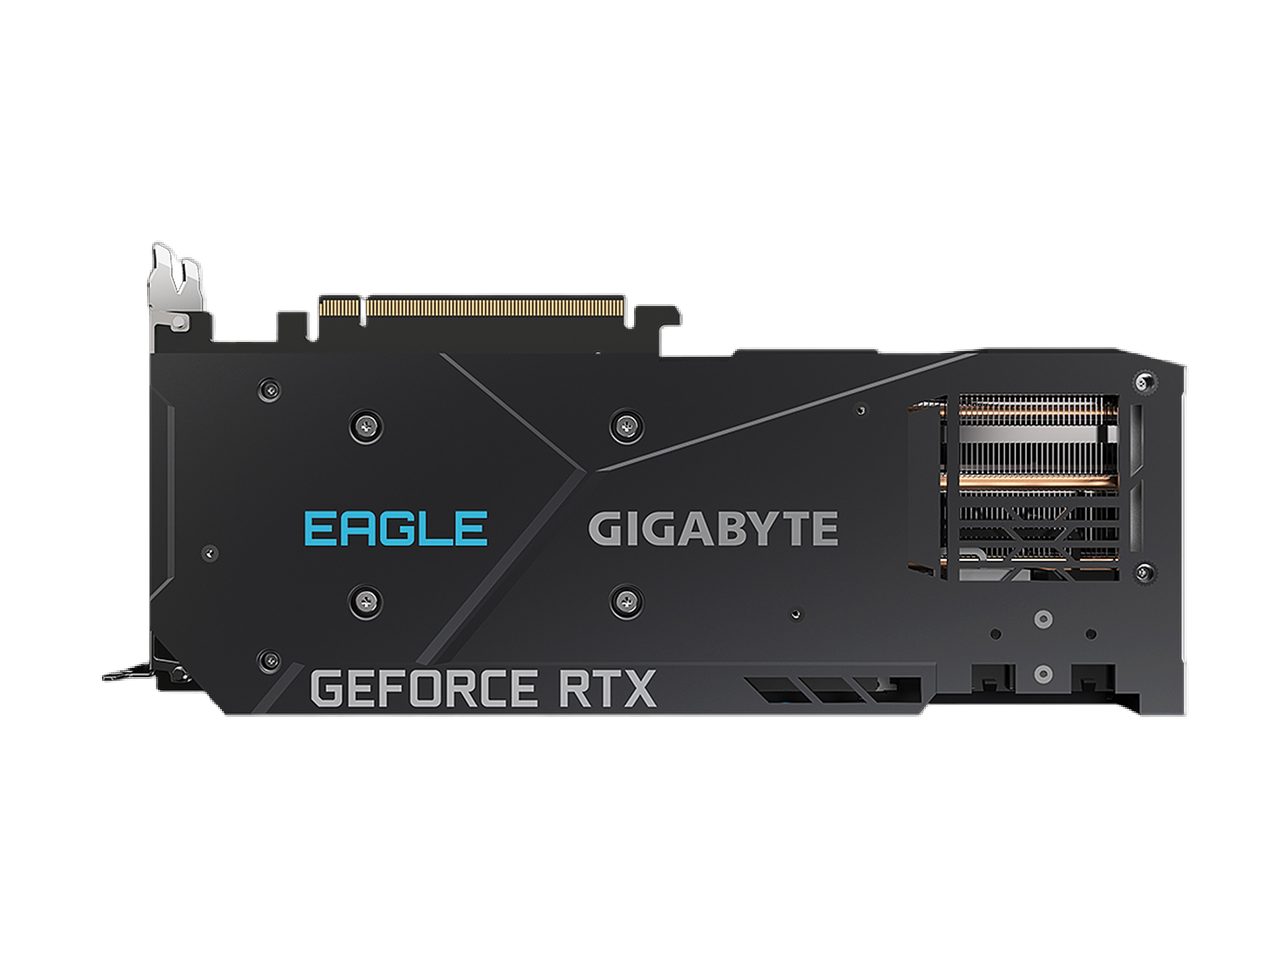 GIGABYTE Eagle GeForce RTX 3070 8GB GDDR6 PCI Express 4.0 ATX Video Card GV-N3070EAGLE-8GD (rev. 2.0) (LHR)